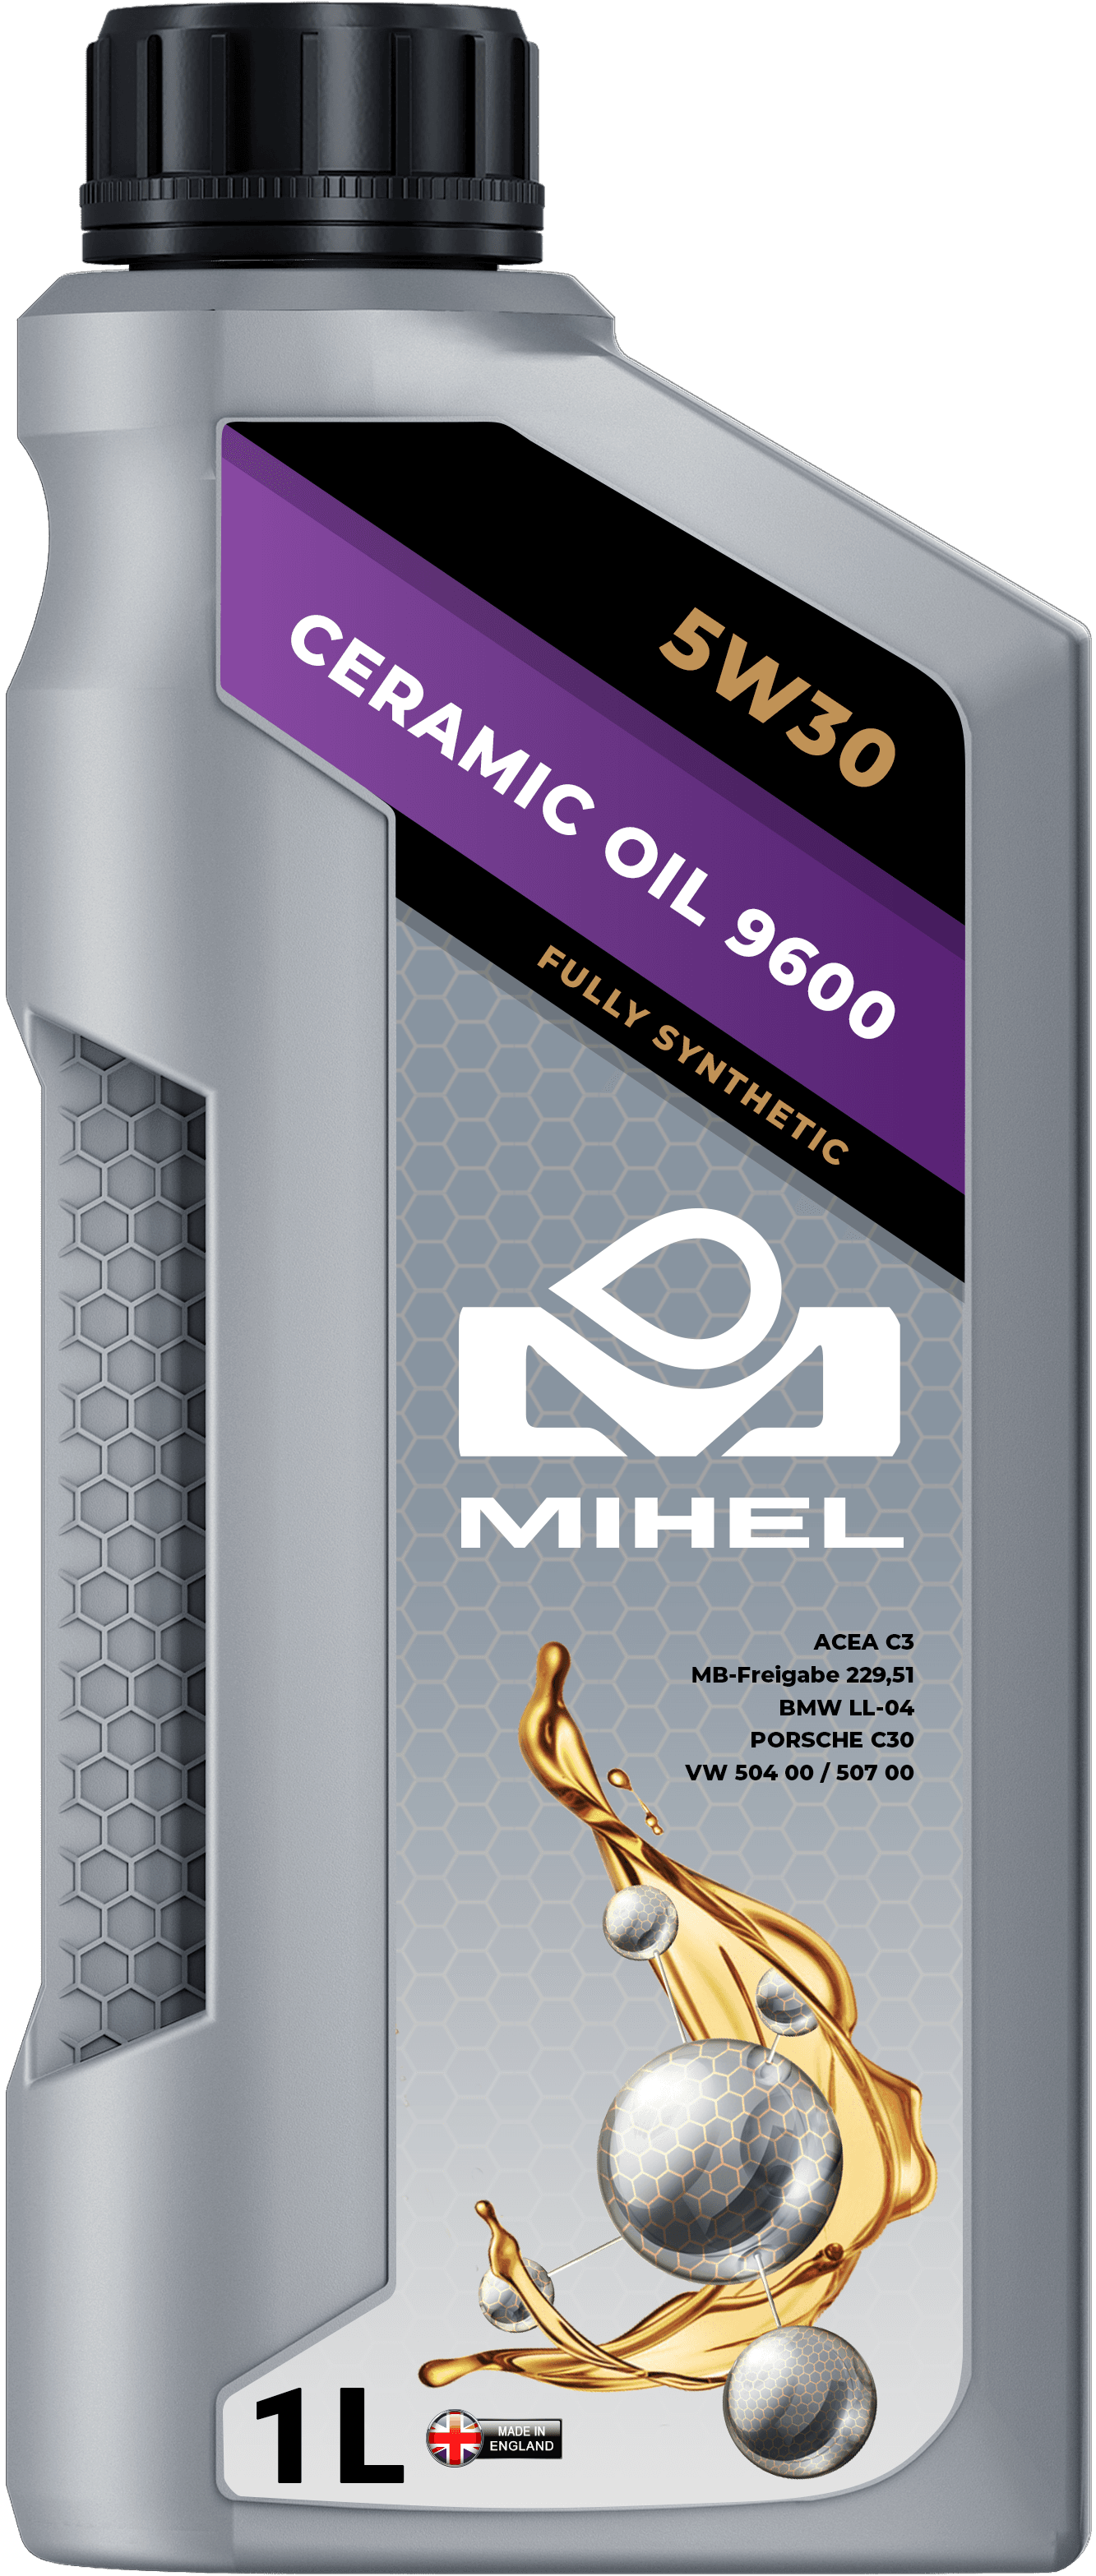 MIHEL Ceramic Oil® 9600 5W30